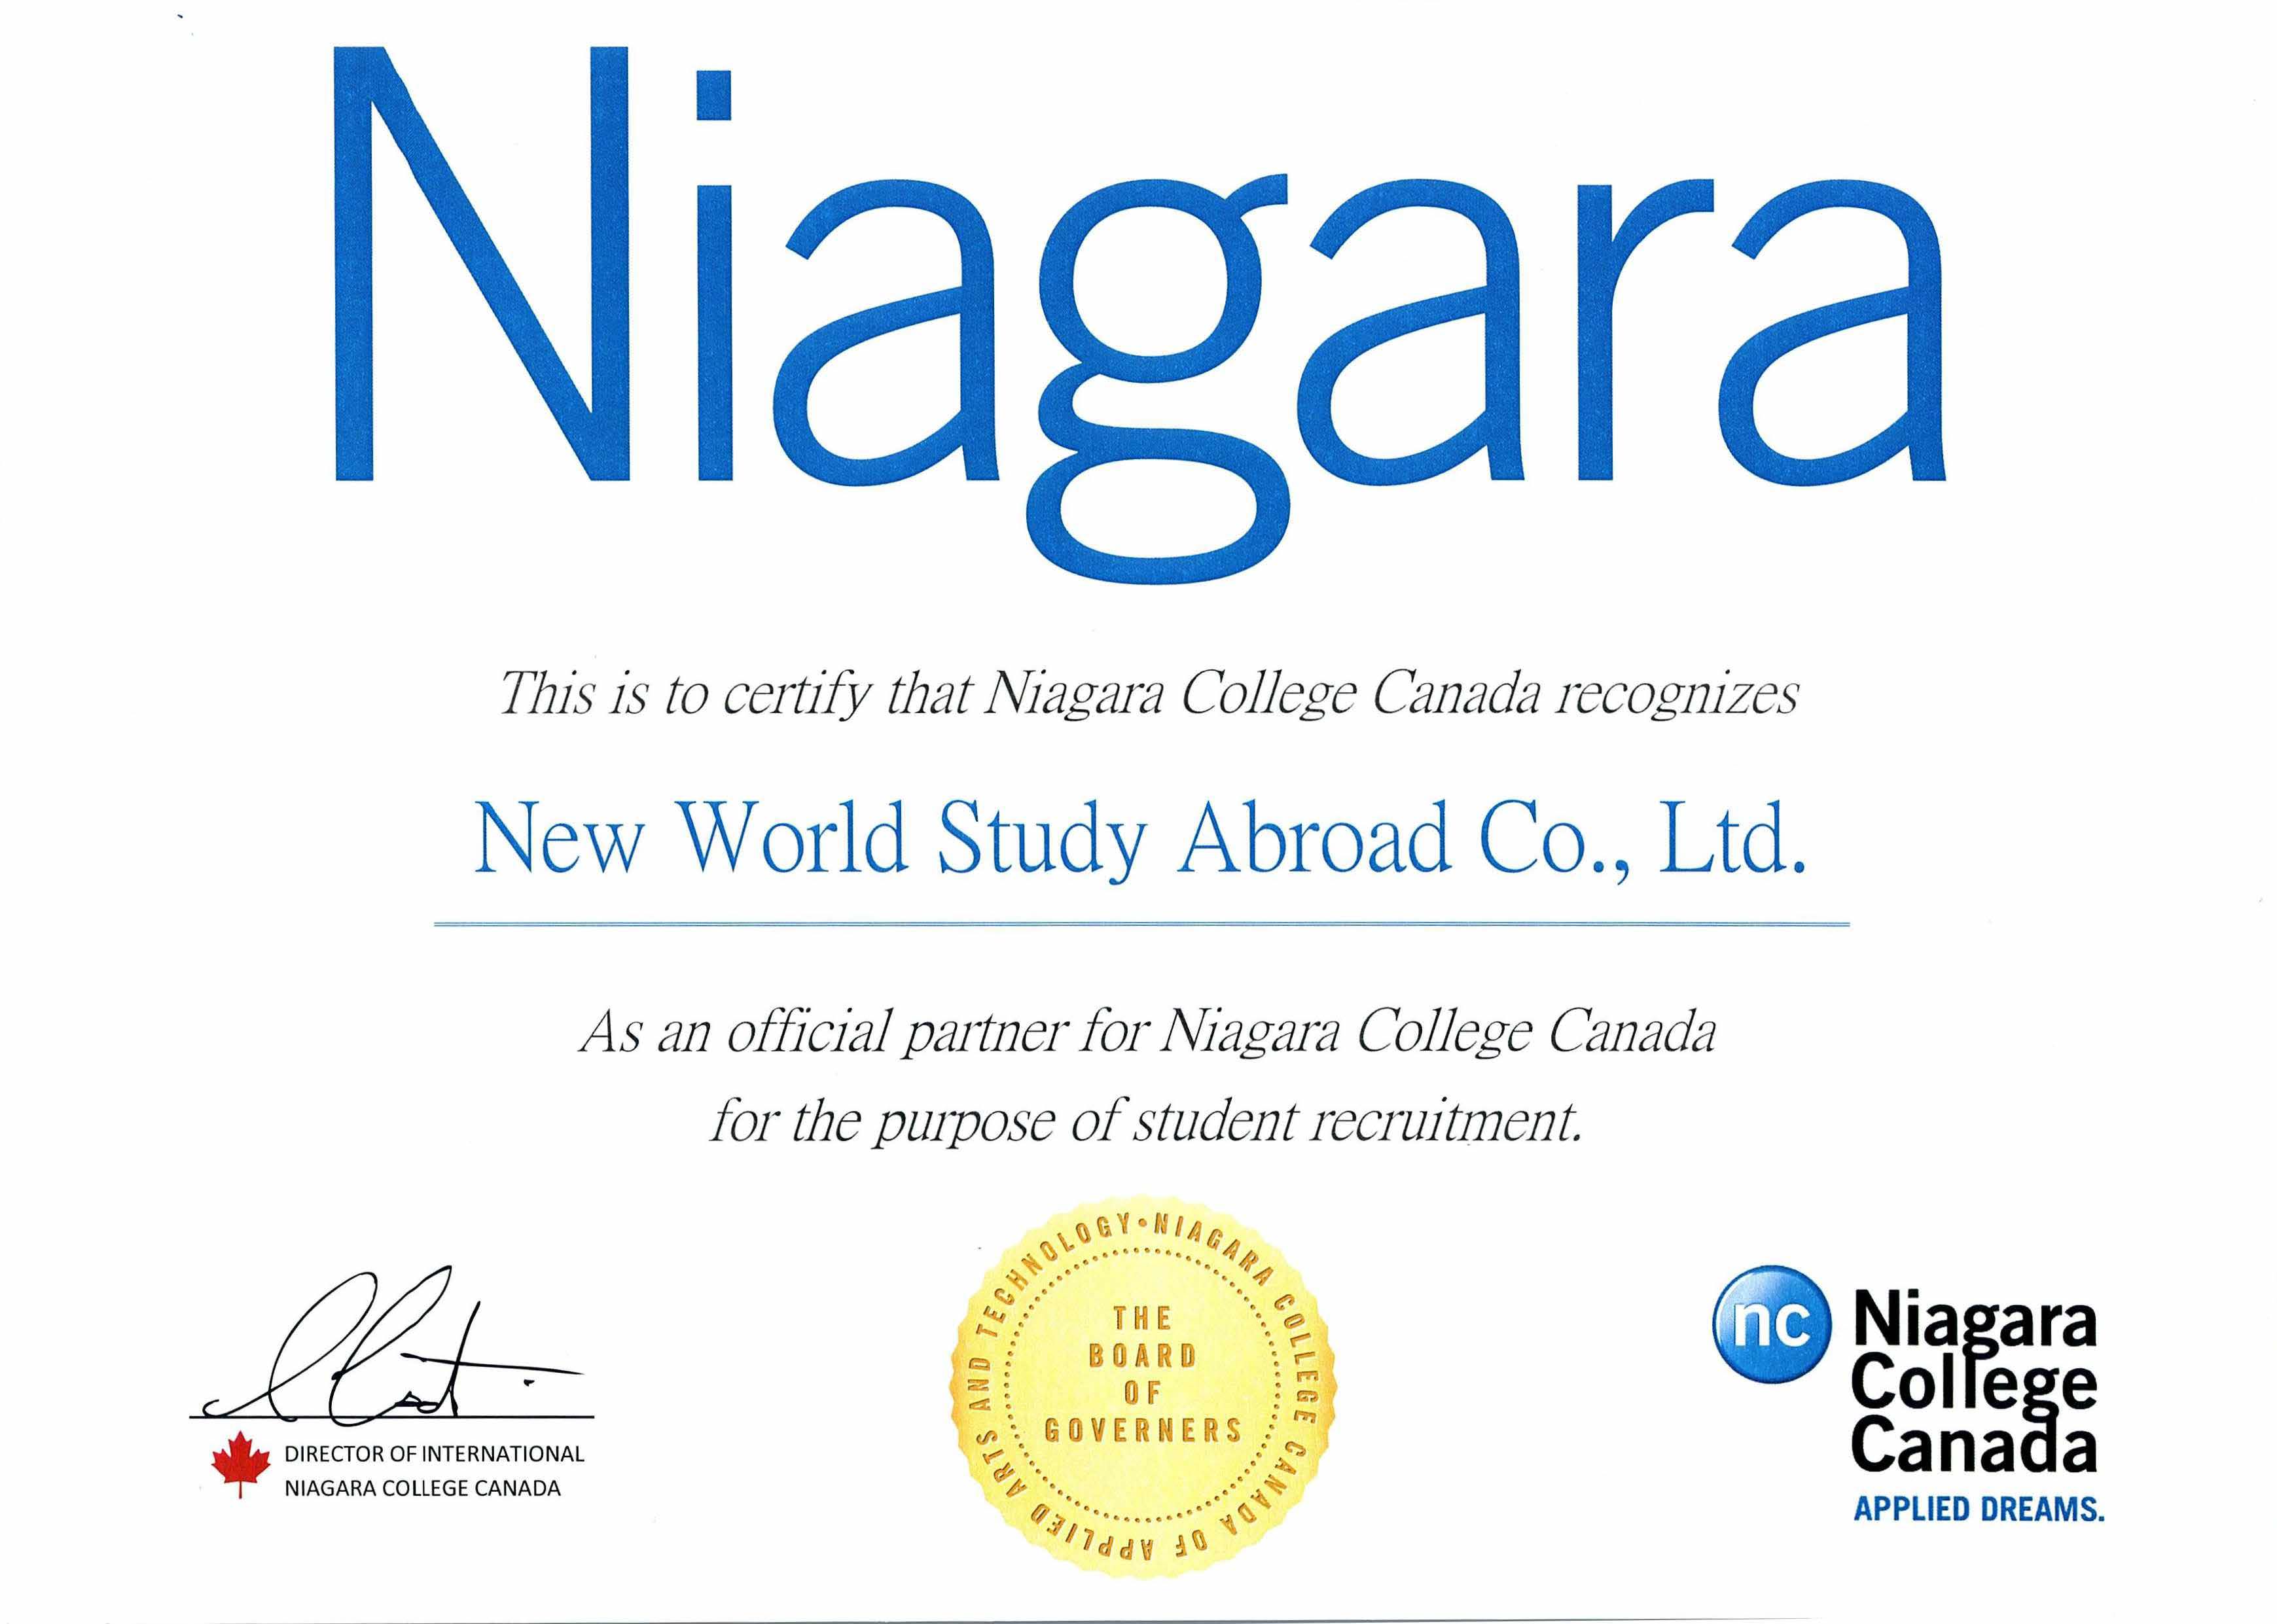 Niagara College - Ontario, Canada